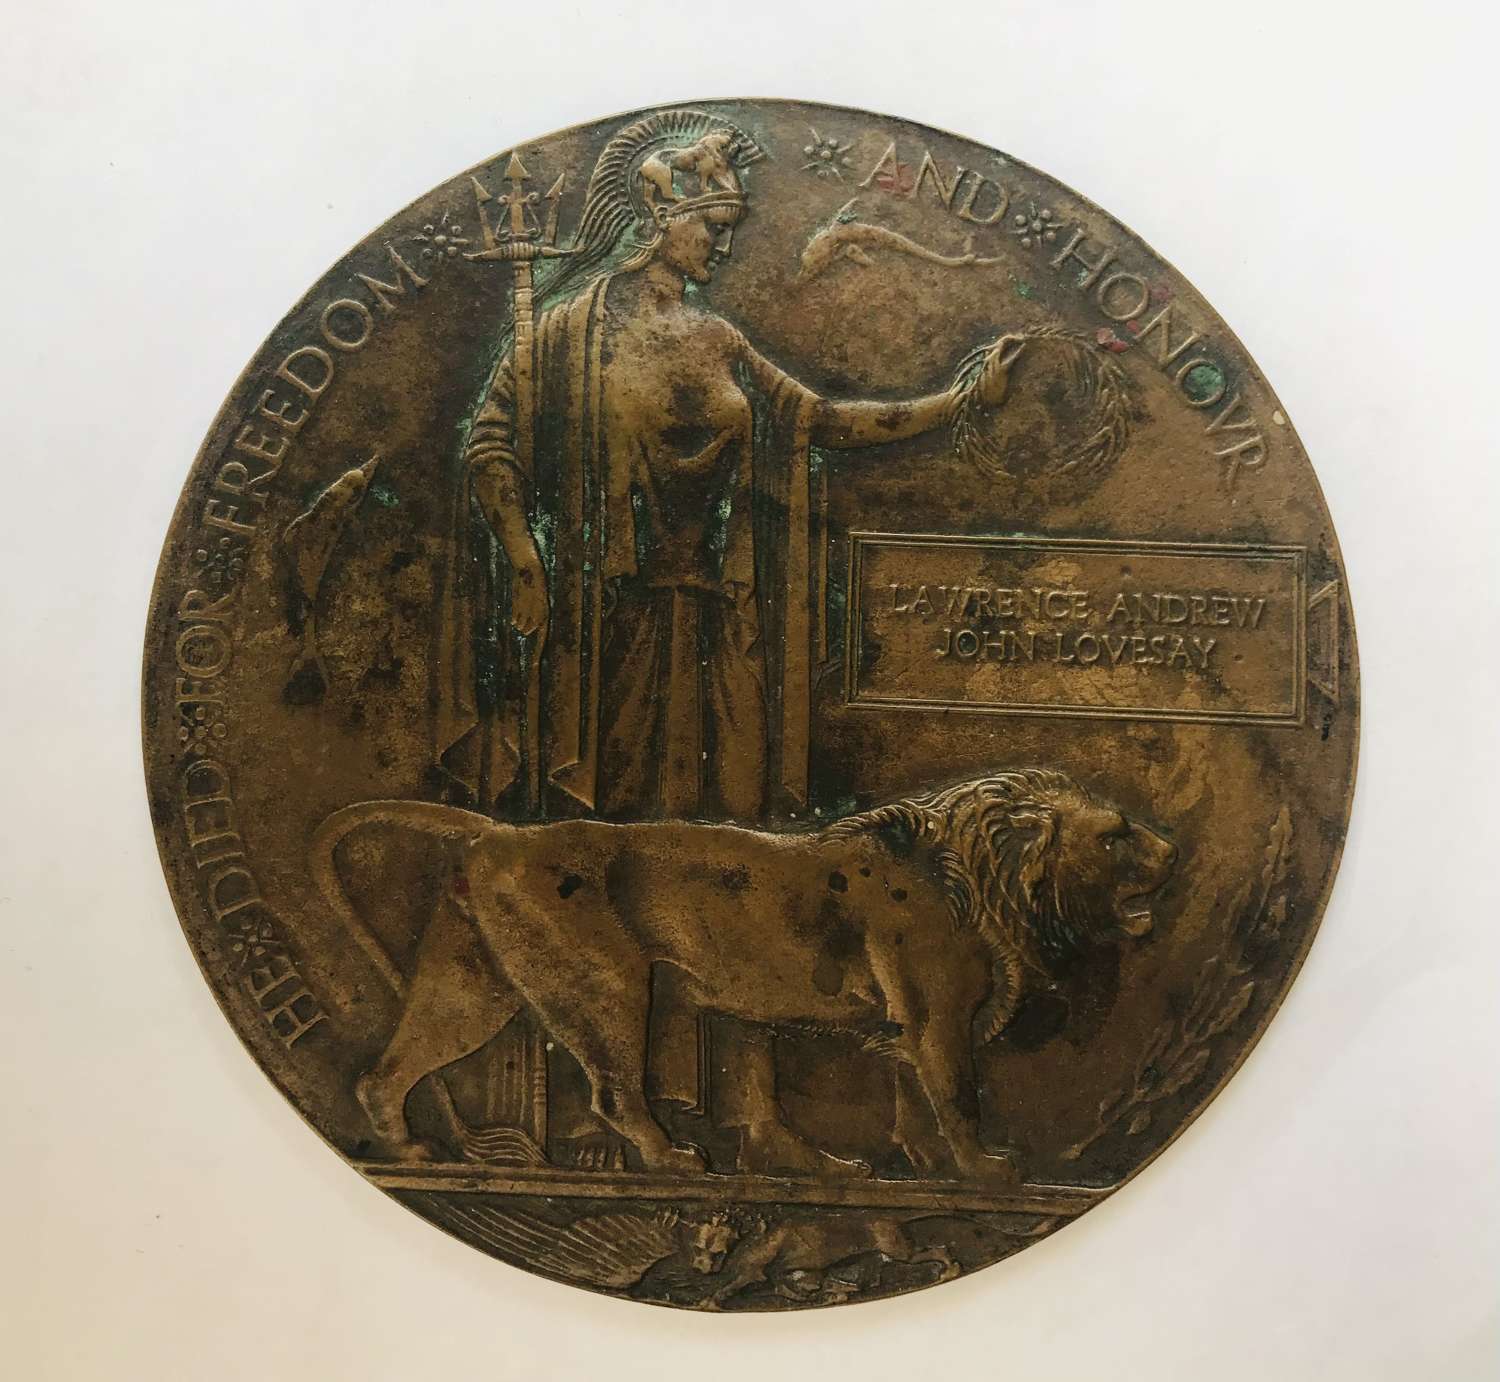 Death, plaque/penny 7th  Battalion, London, Regiment